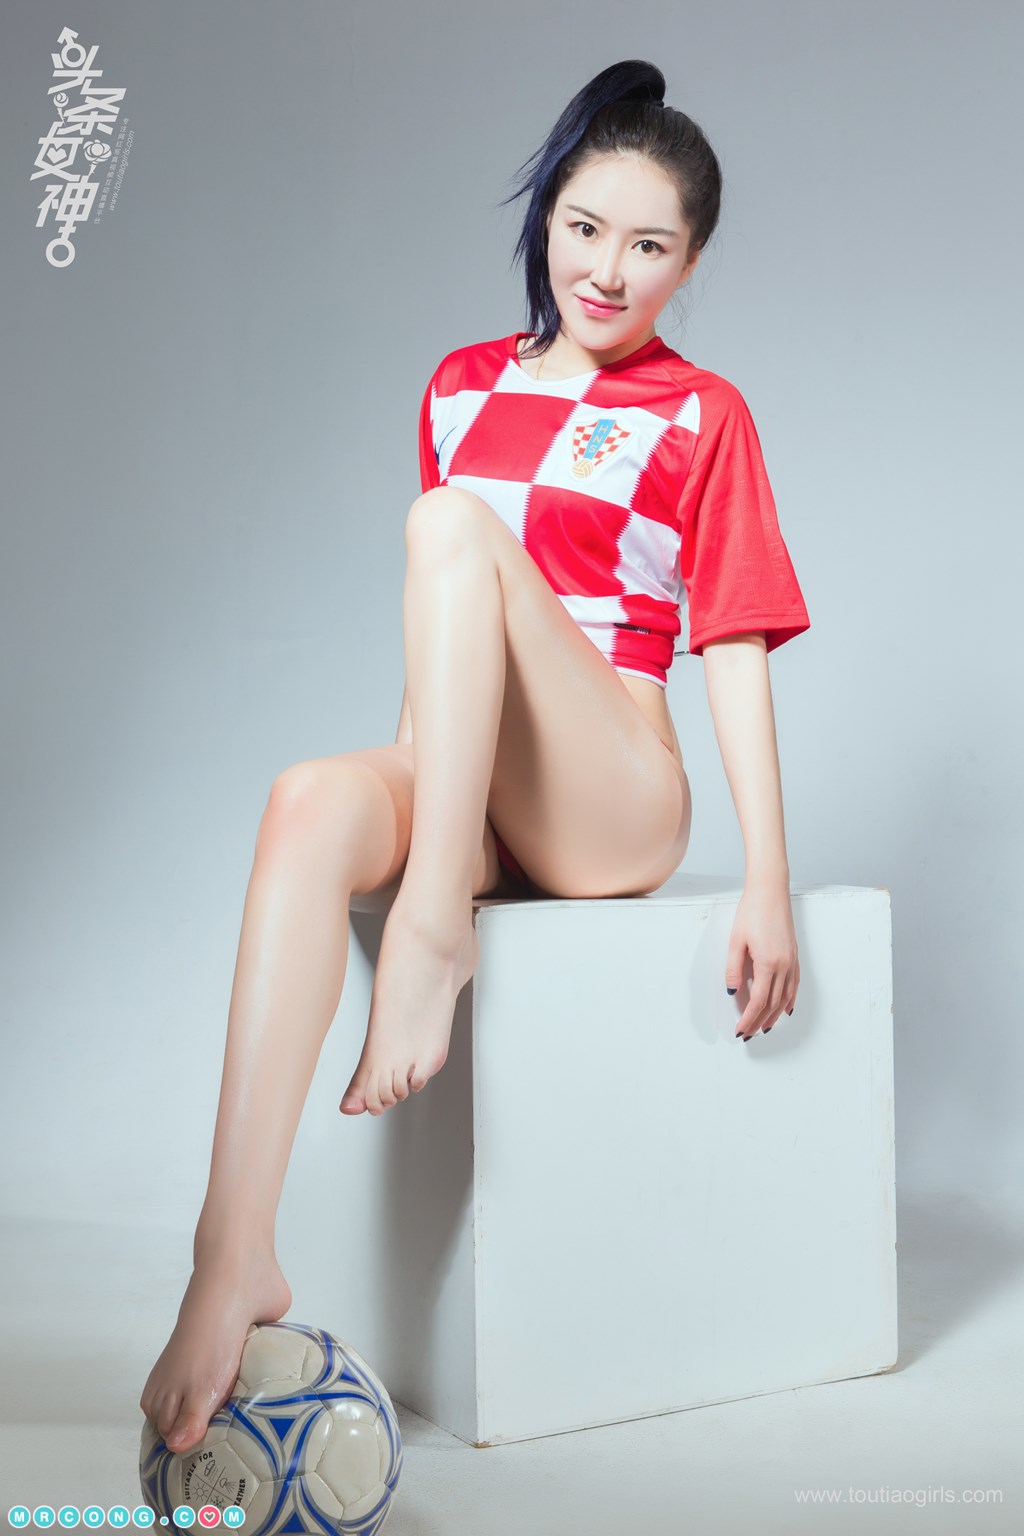 TouTiao 2018-07-15: Model Mi Xue (米雪) (12 photos)